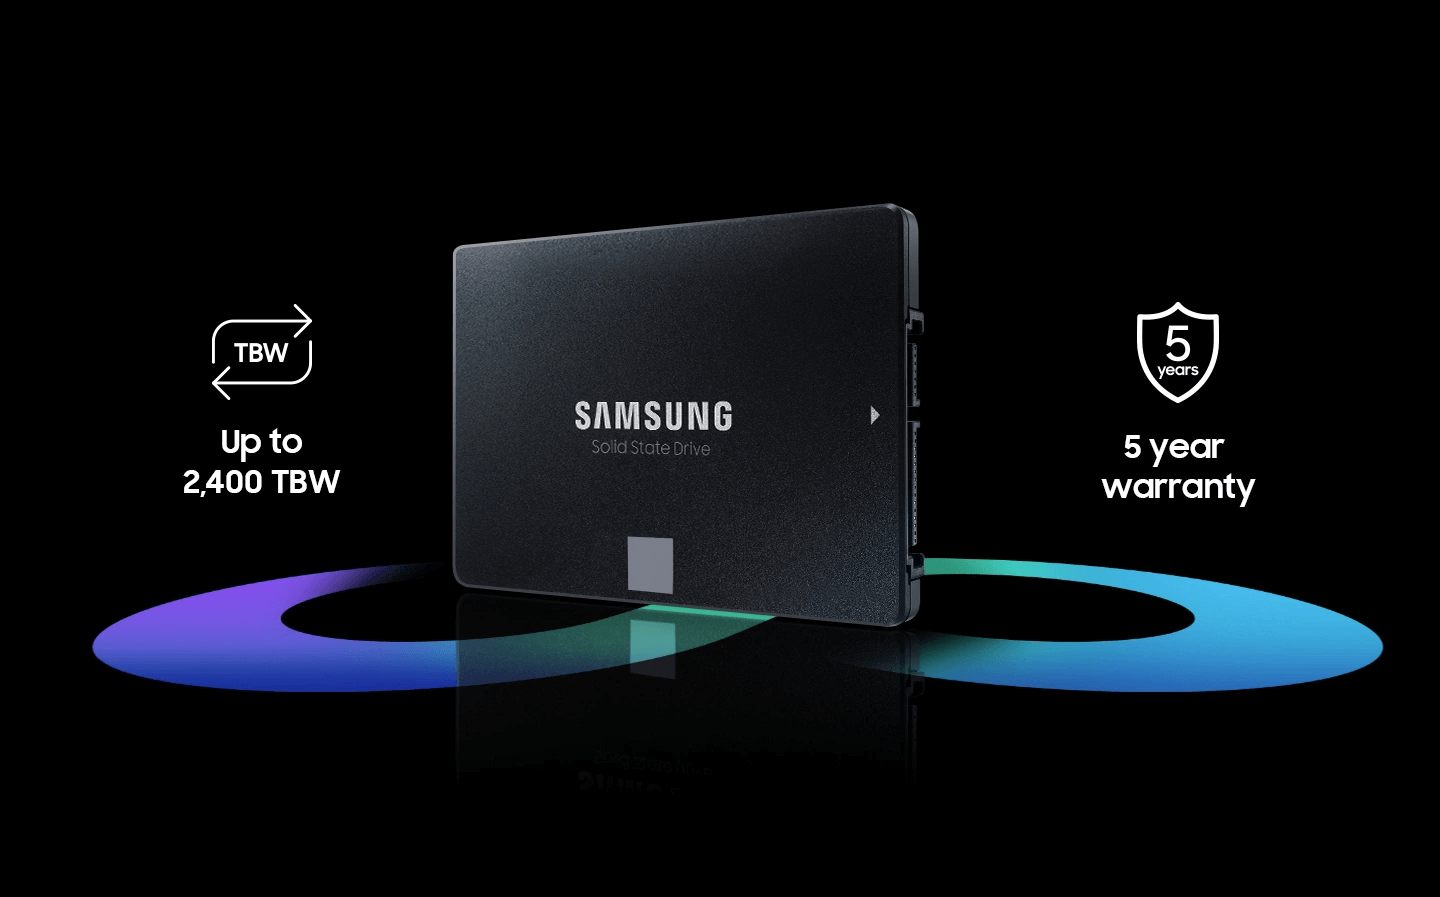 כונן SSD סמסונג Samsung MZ-77E500BW EVO870 500GB 